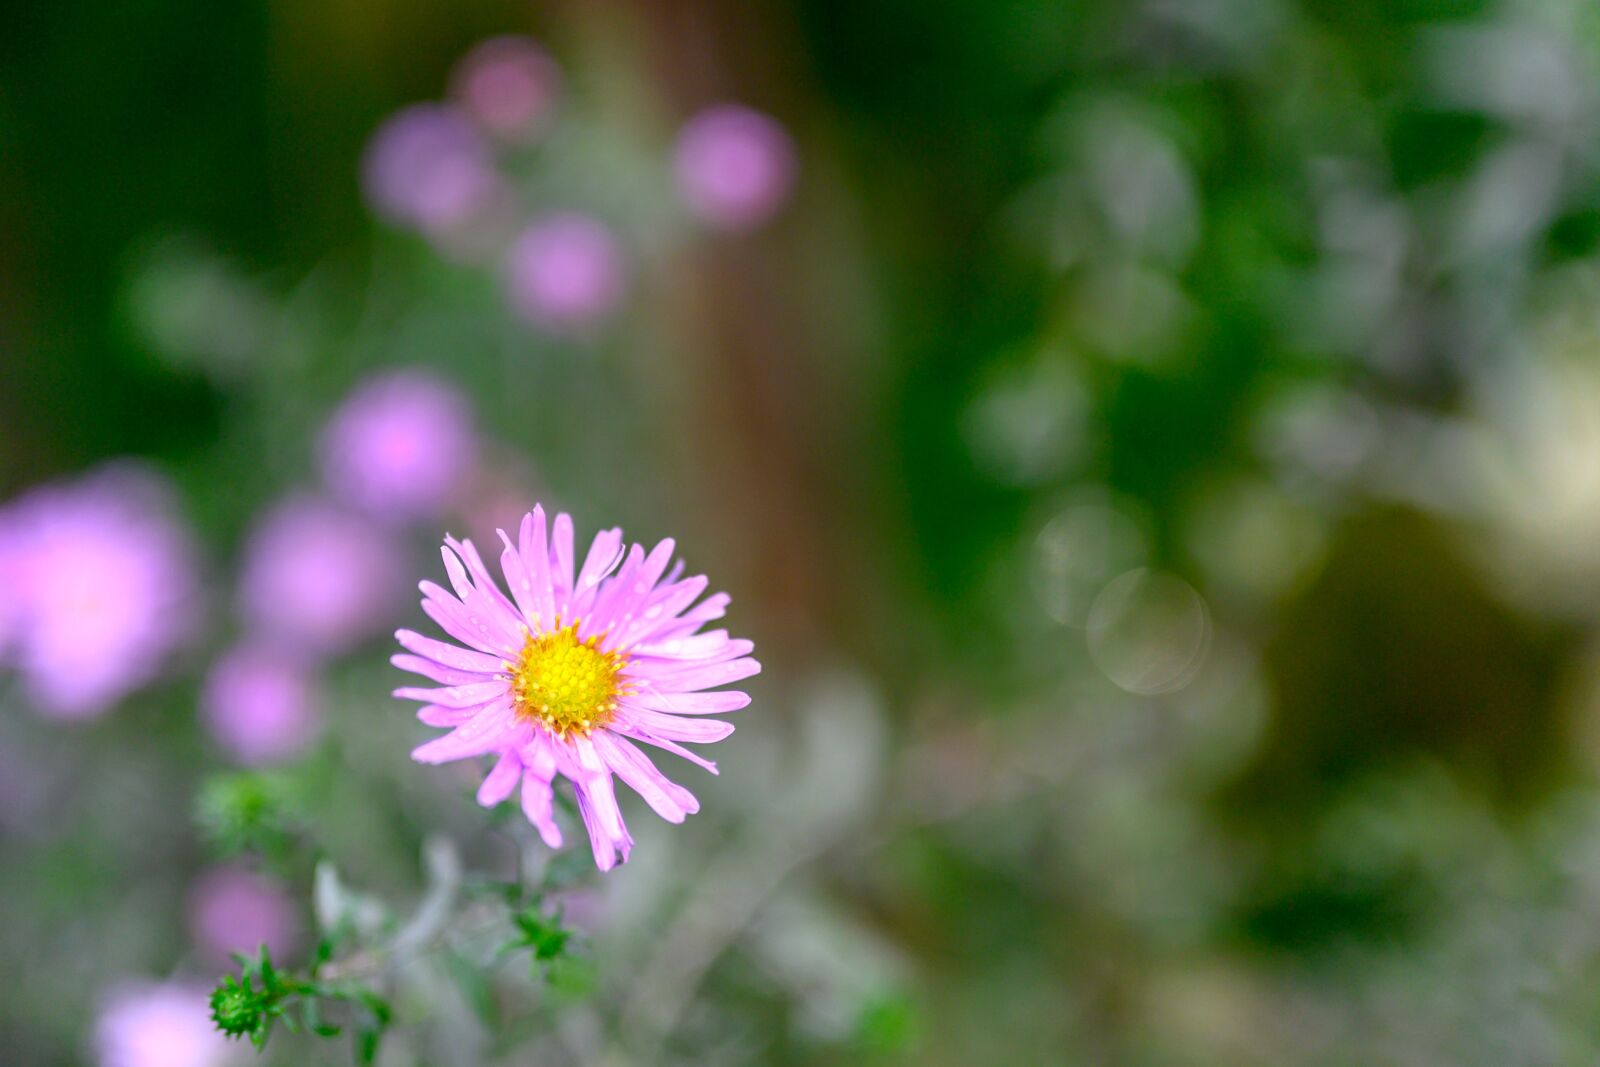 Nikon Nikkor Z 50mm F1.8 S sample photo. Flower power, flower, garden photography